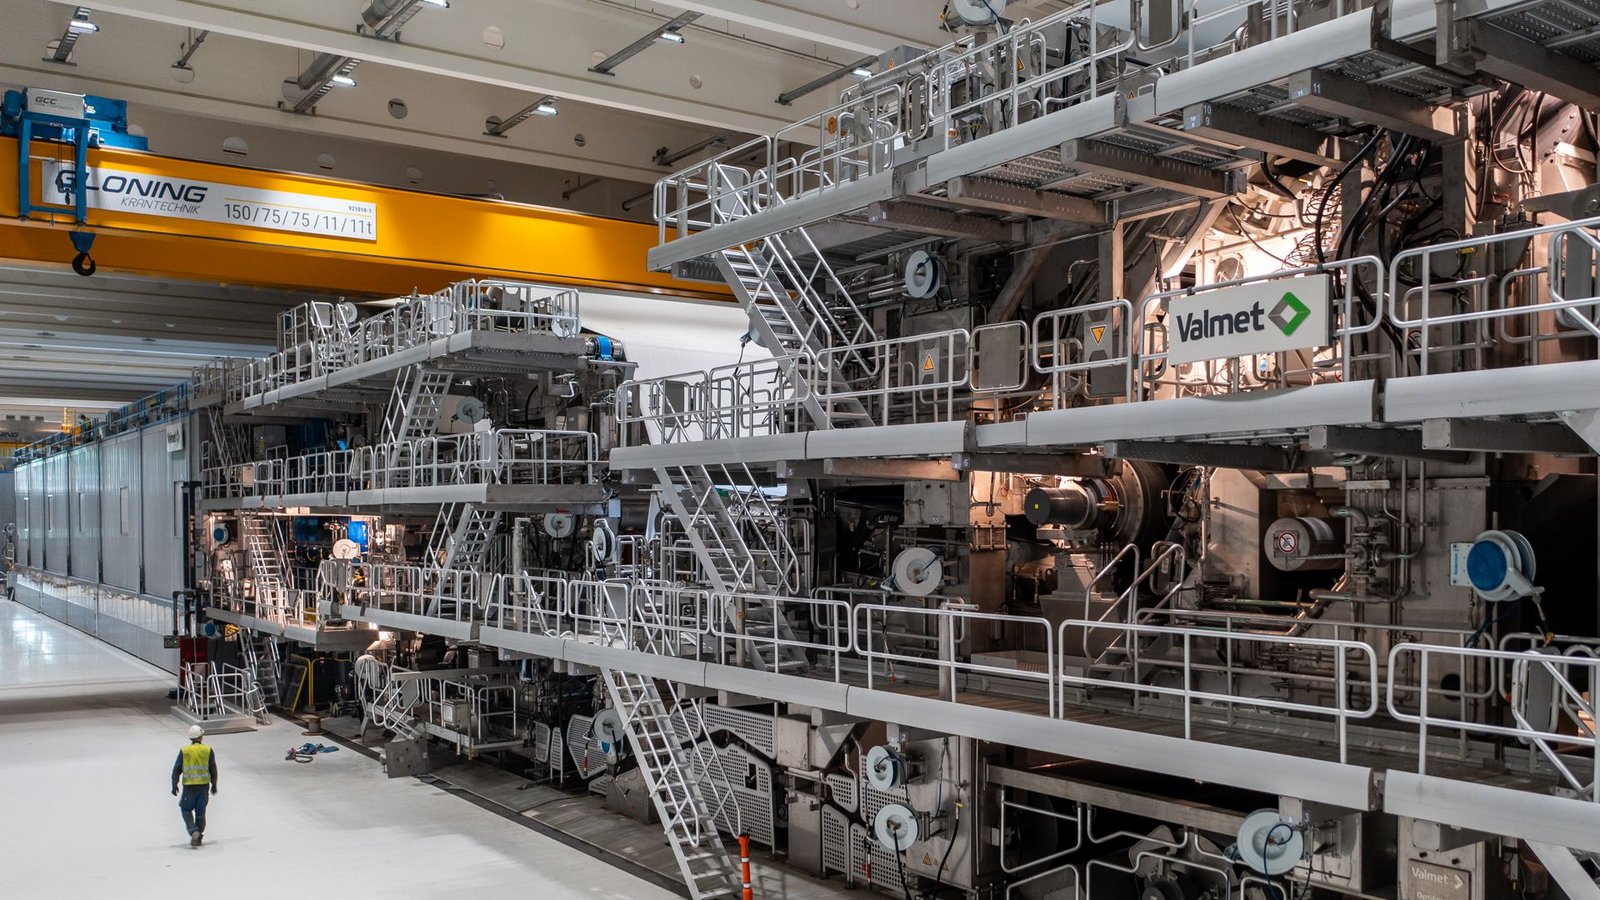 200 Meter lang, 20 Meter hoch, 500 Millionen Euro wert: Die neue Papiermaschine  bei Palm in Aalen hat gigantische Ausmaße.Foto: Palm